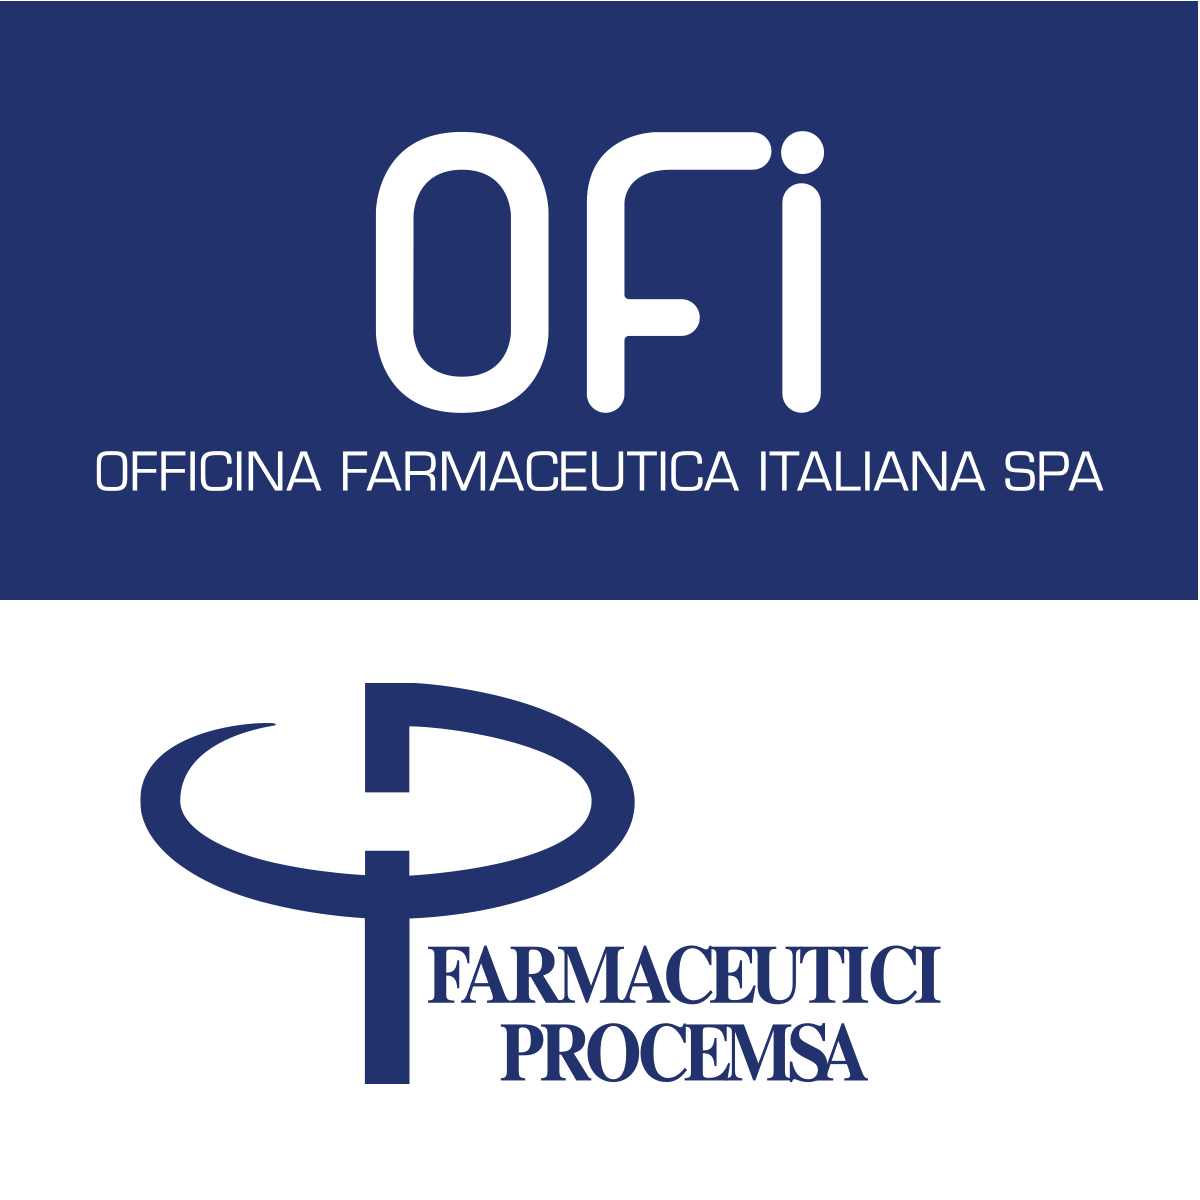 O.F.I Officina Farmaceutica Italiana Spa